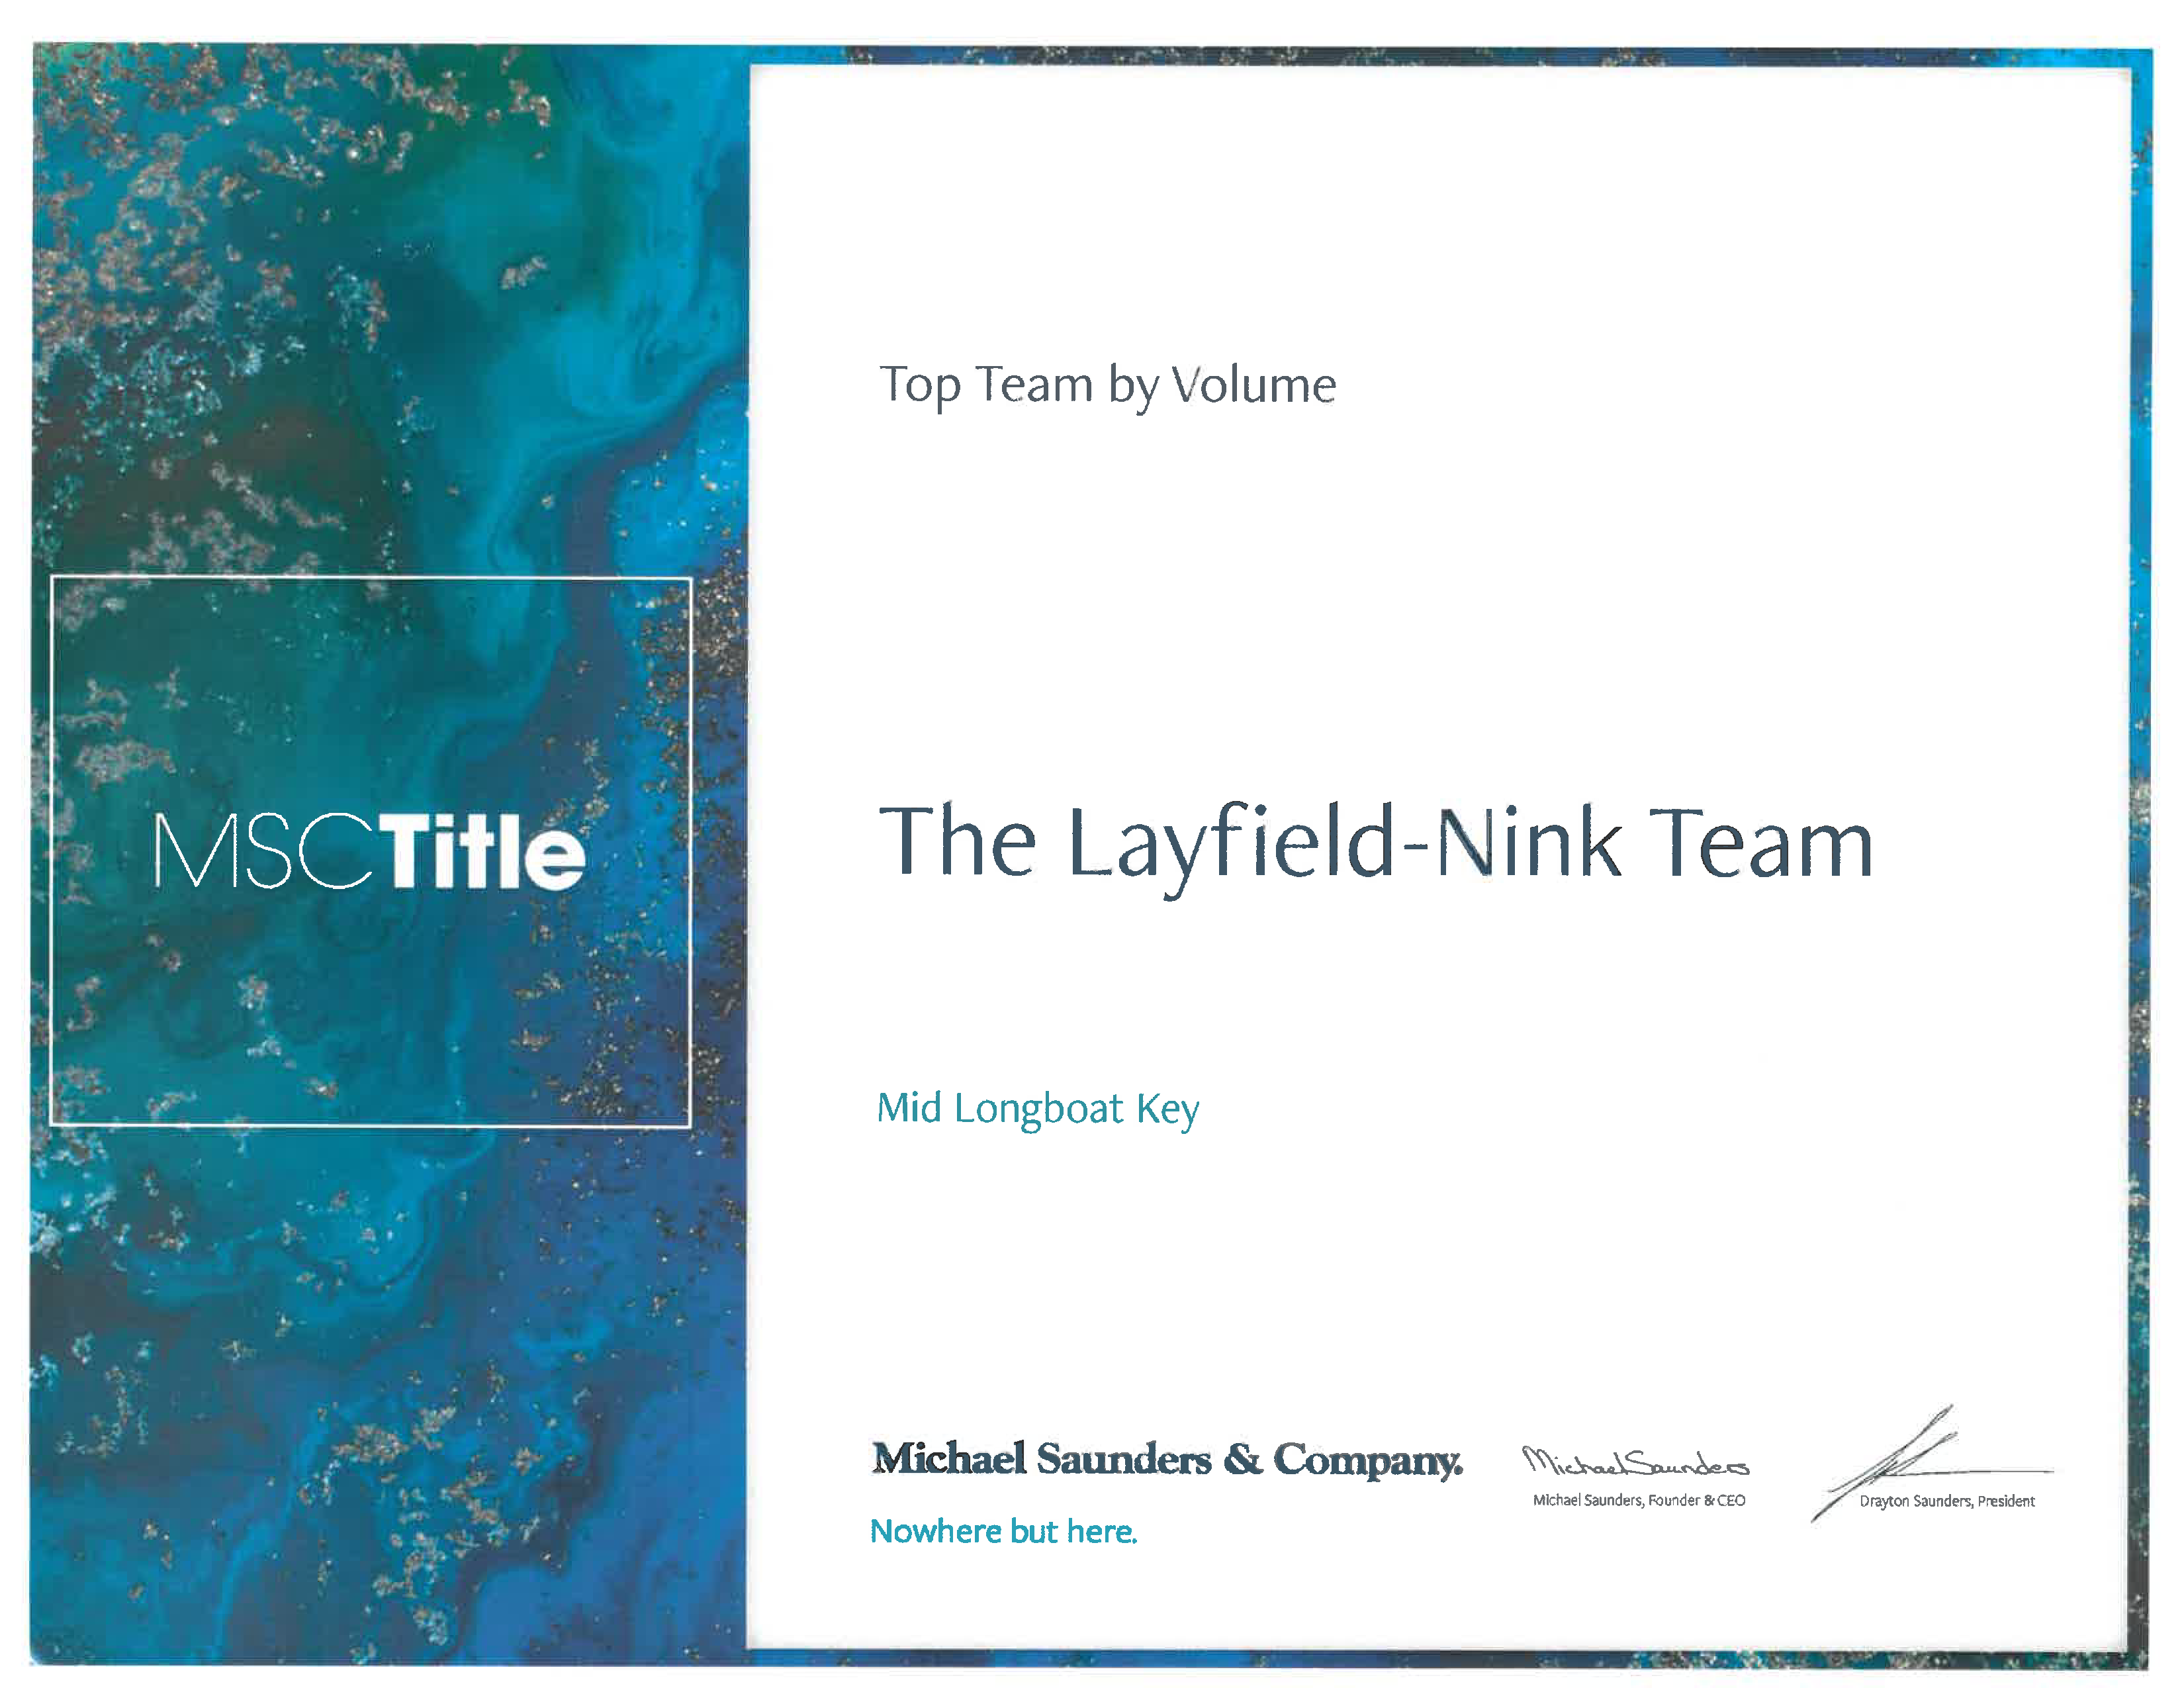 Layfield-Nink Team Top Volume Award 2021 for Longboat Key Properties